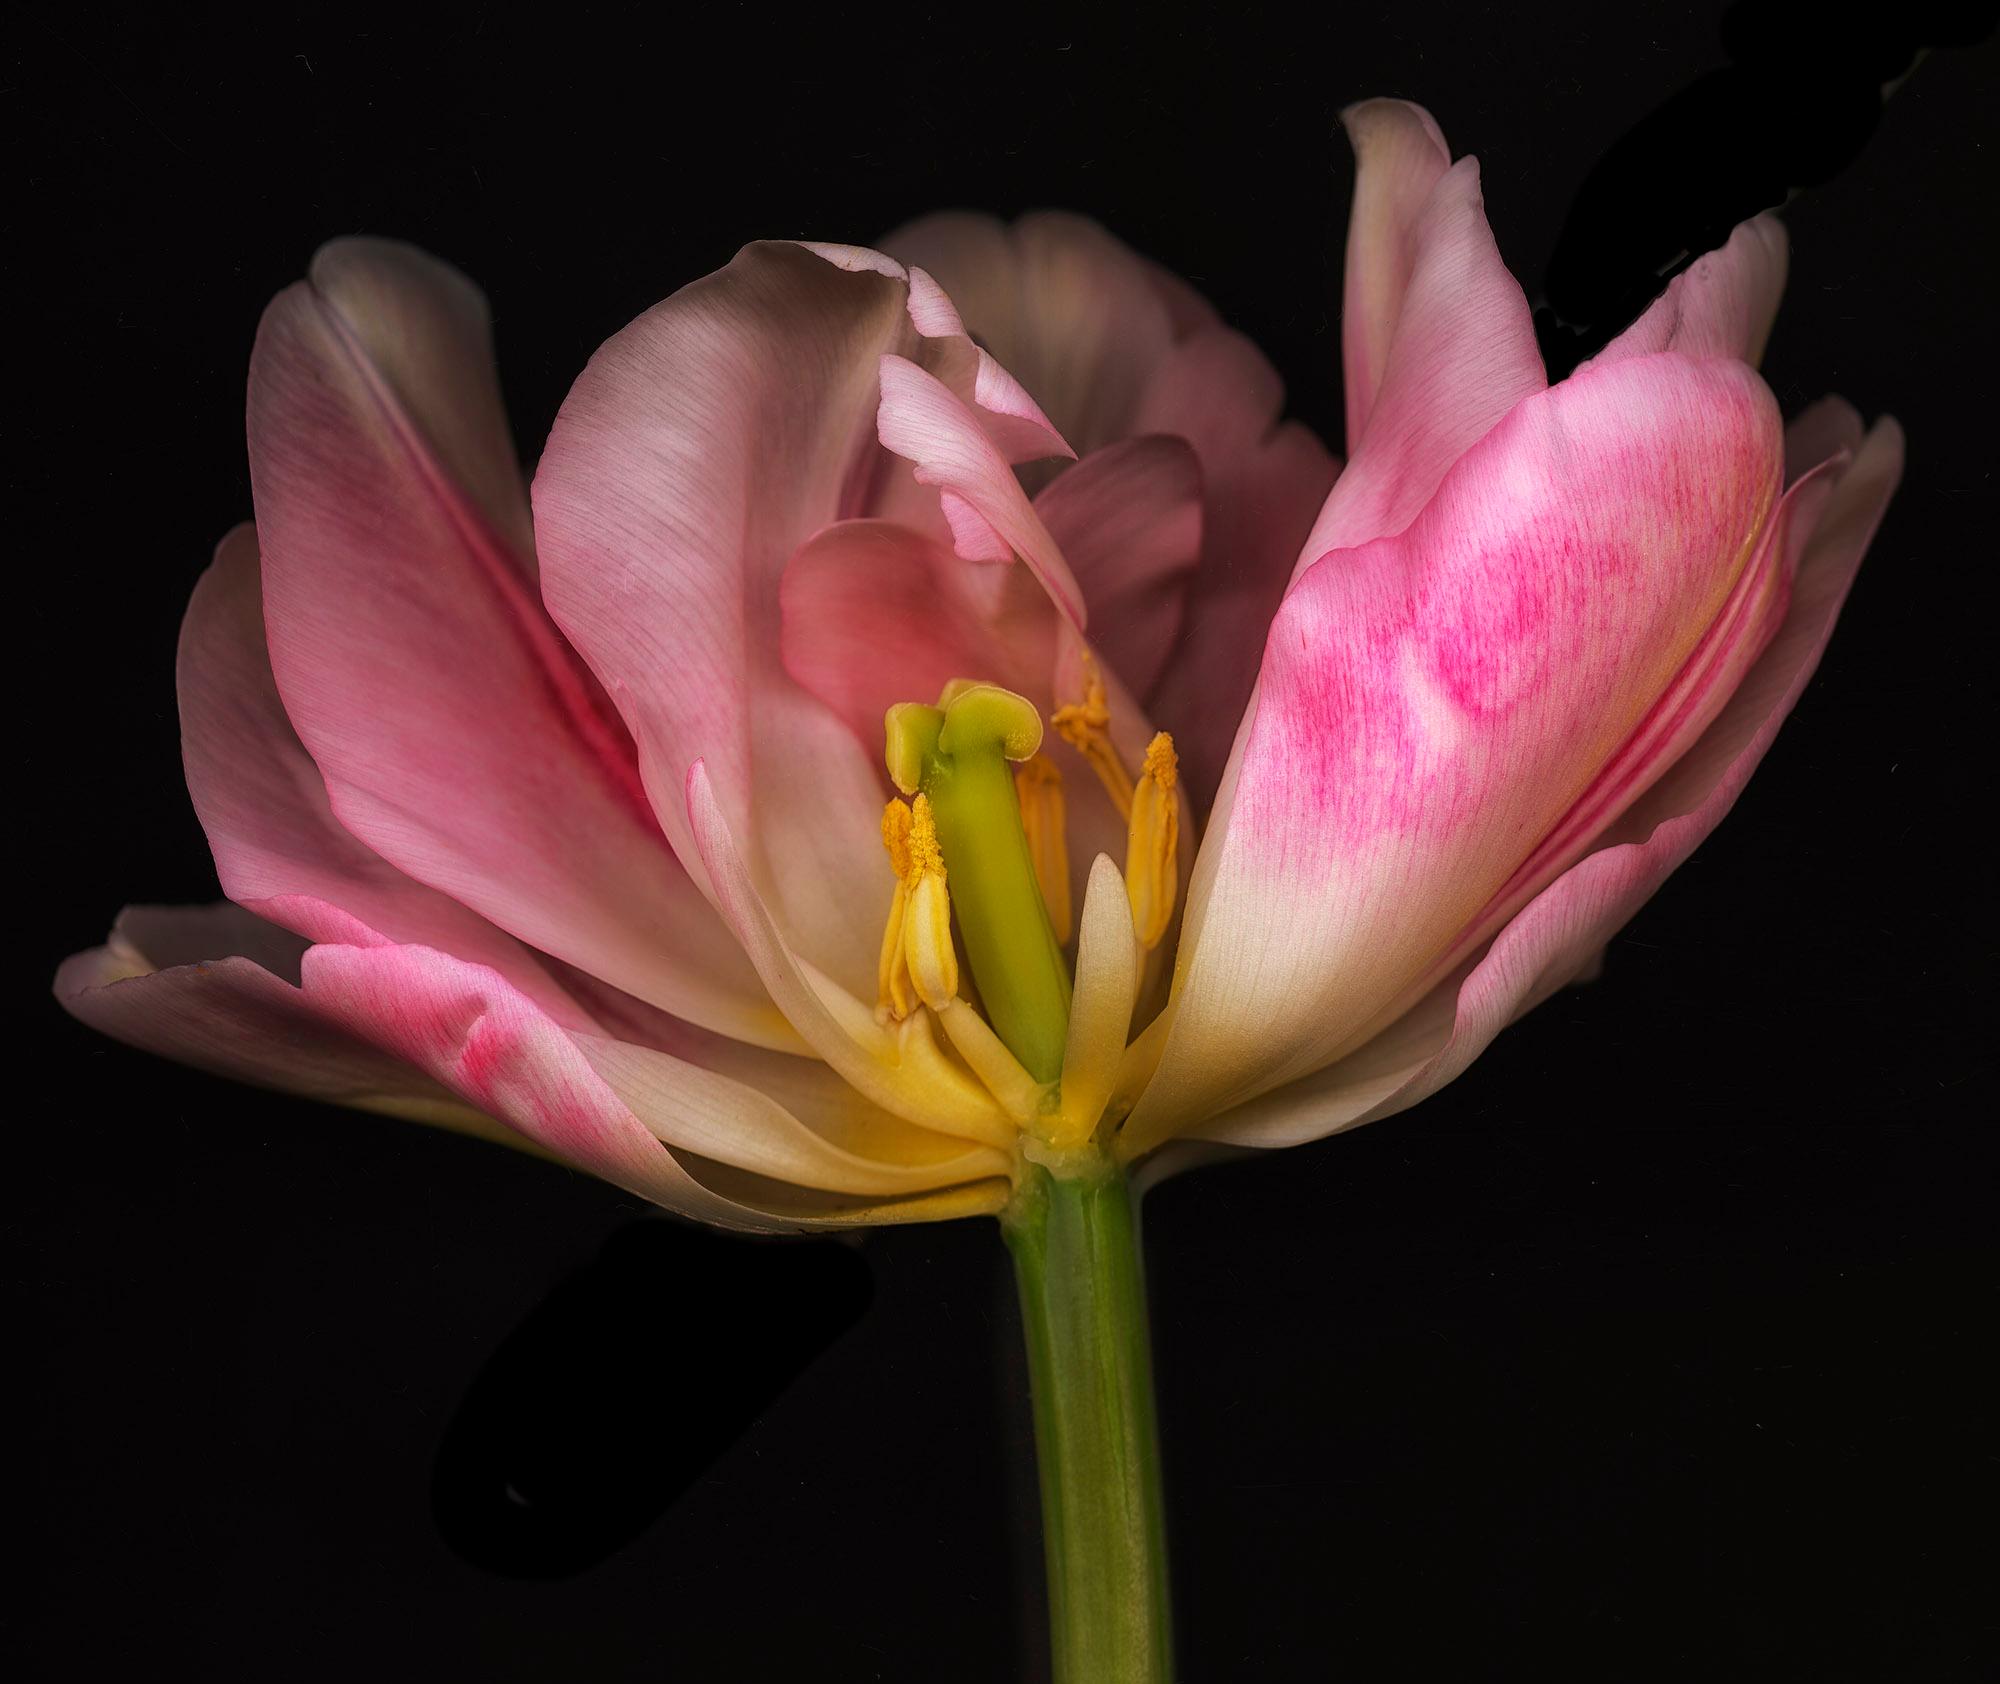 Allan Forsyth Color Photograph – Ghost Flower No 8, Blumenfotografie, rosa Kunst, Druck in limitierter Auflage